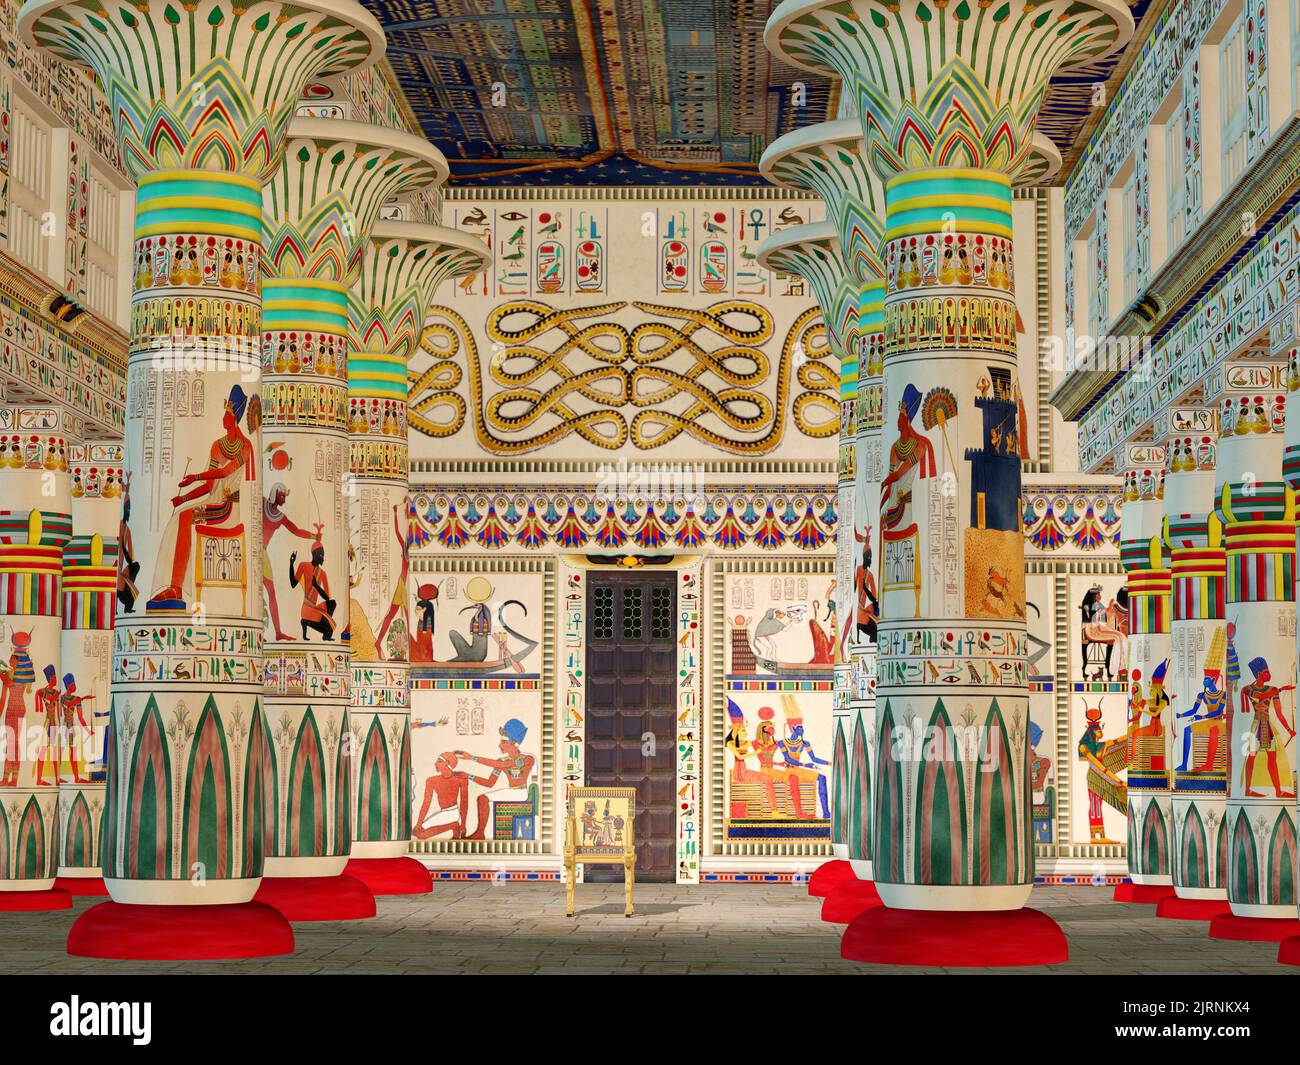 Salón Egipcio - Un templo egipcio era un santuario y lugar santo donde los egipcios venían a adorar a sus dioses. Foto de stock